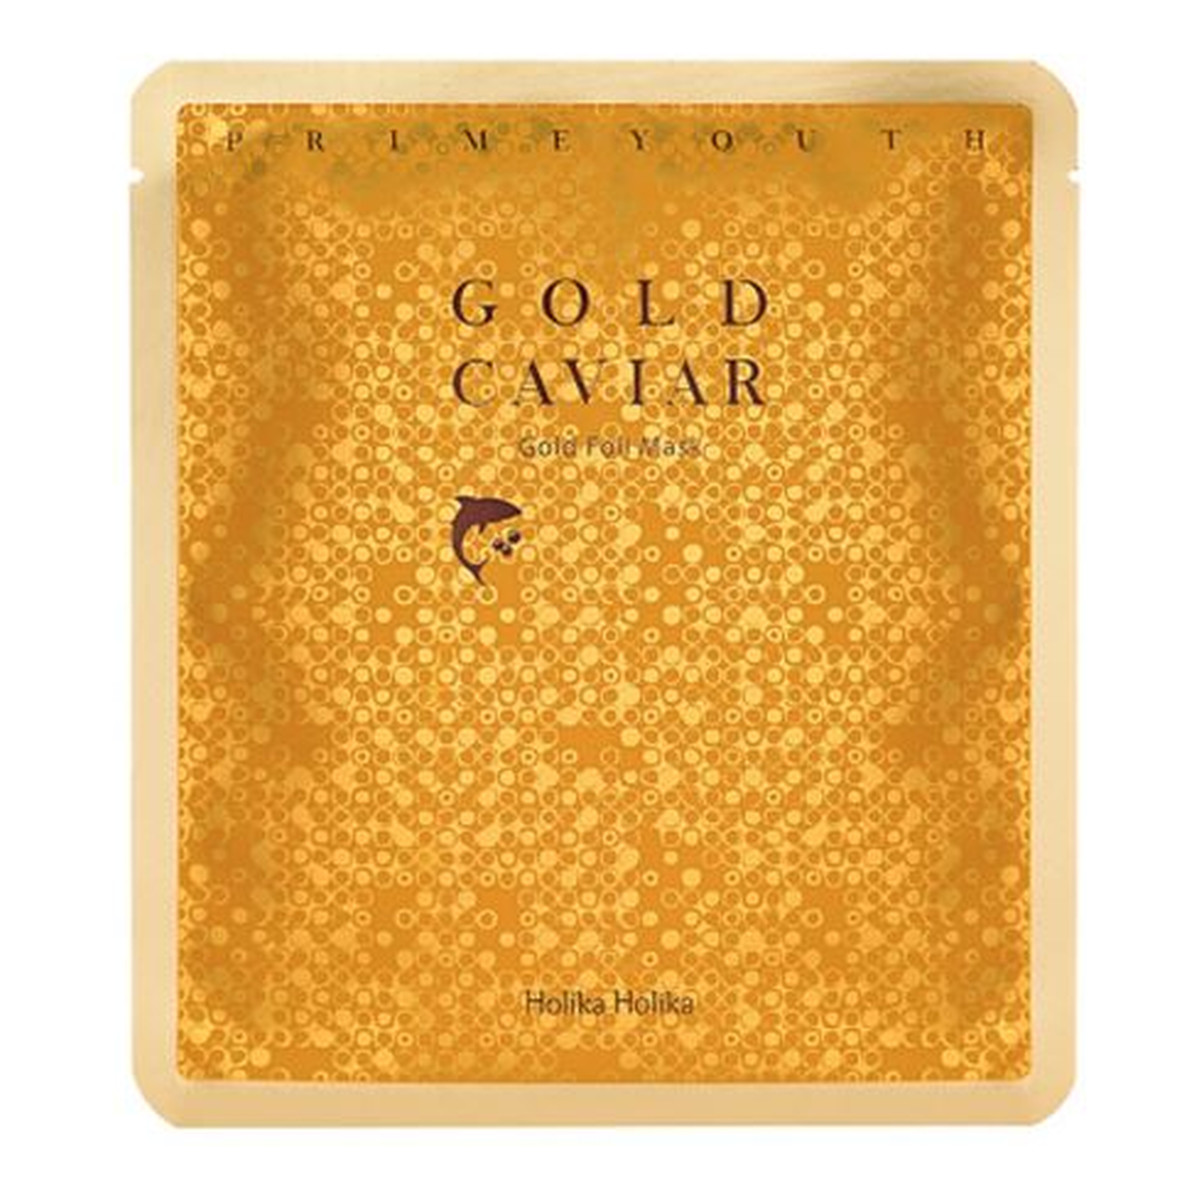 Holika Holika Gold Caviar maseczka pielęgnująca do twarzy 25g